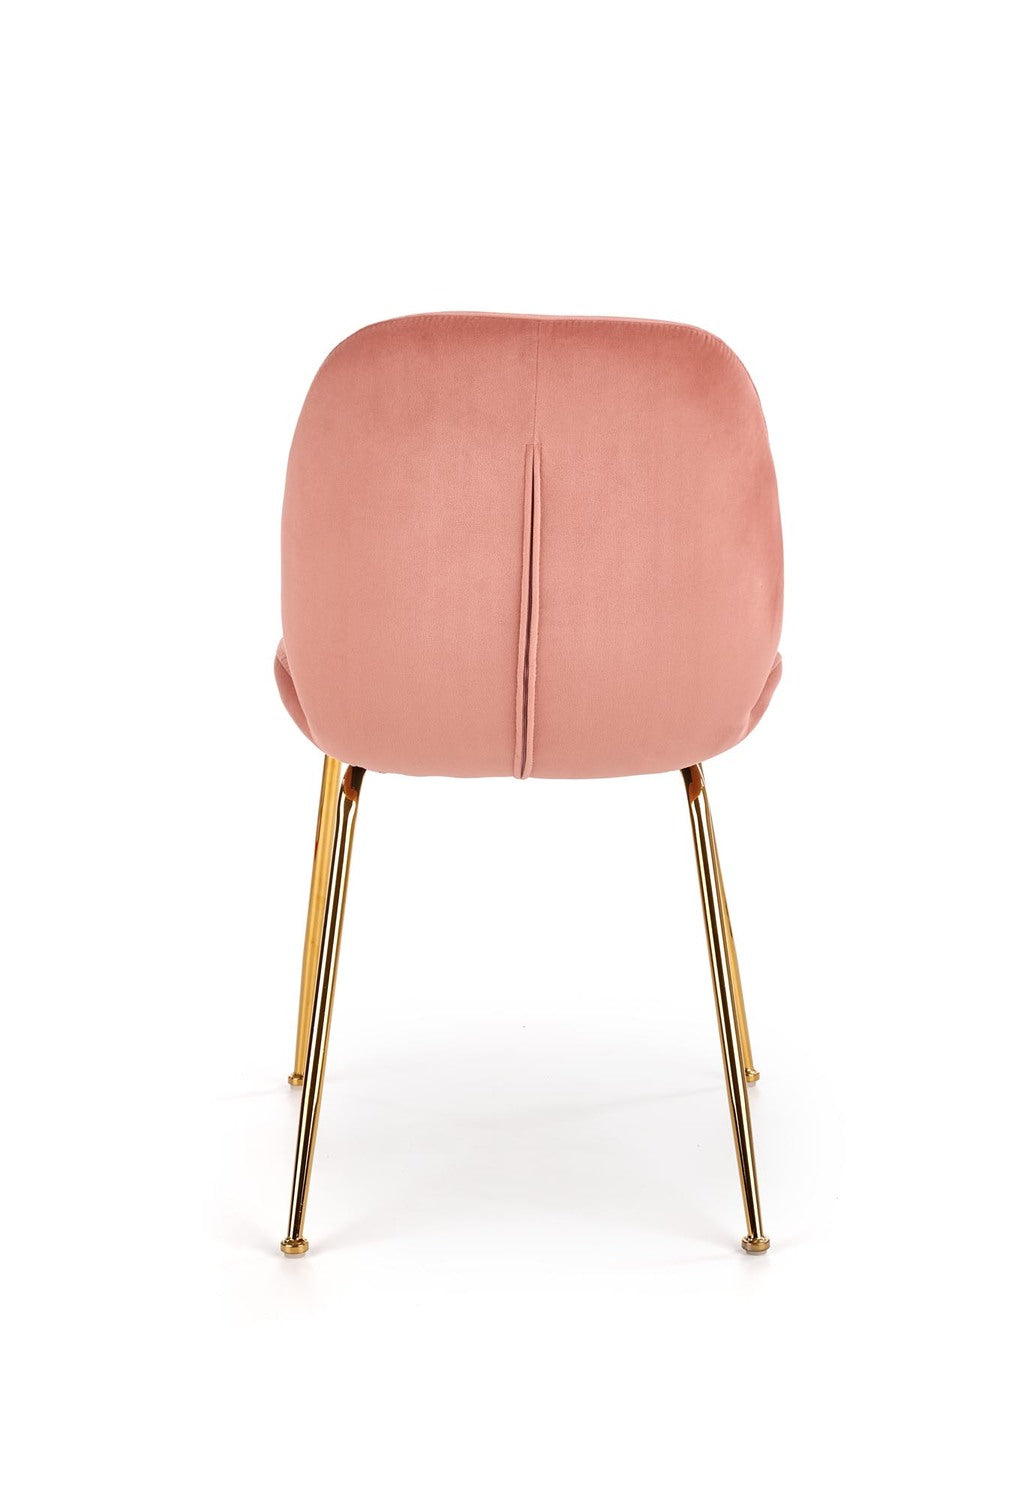 Stuhl in rosa farbenem Samt mit goldenen Metallbeinen